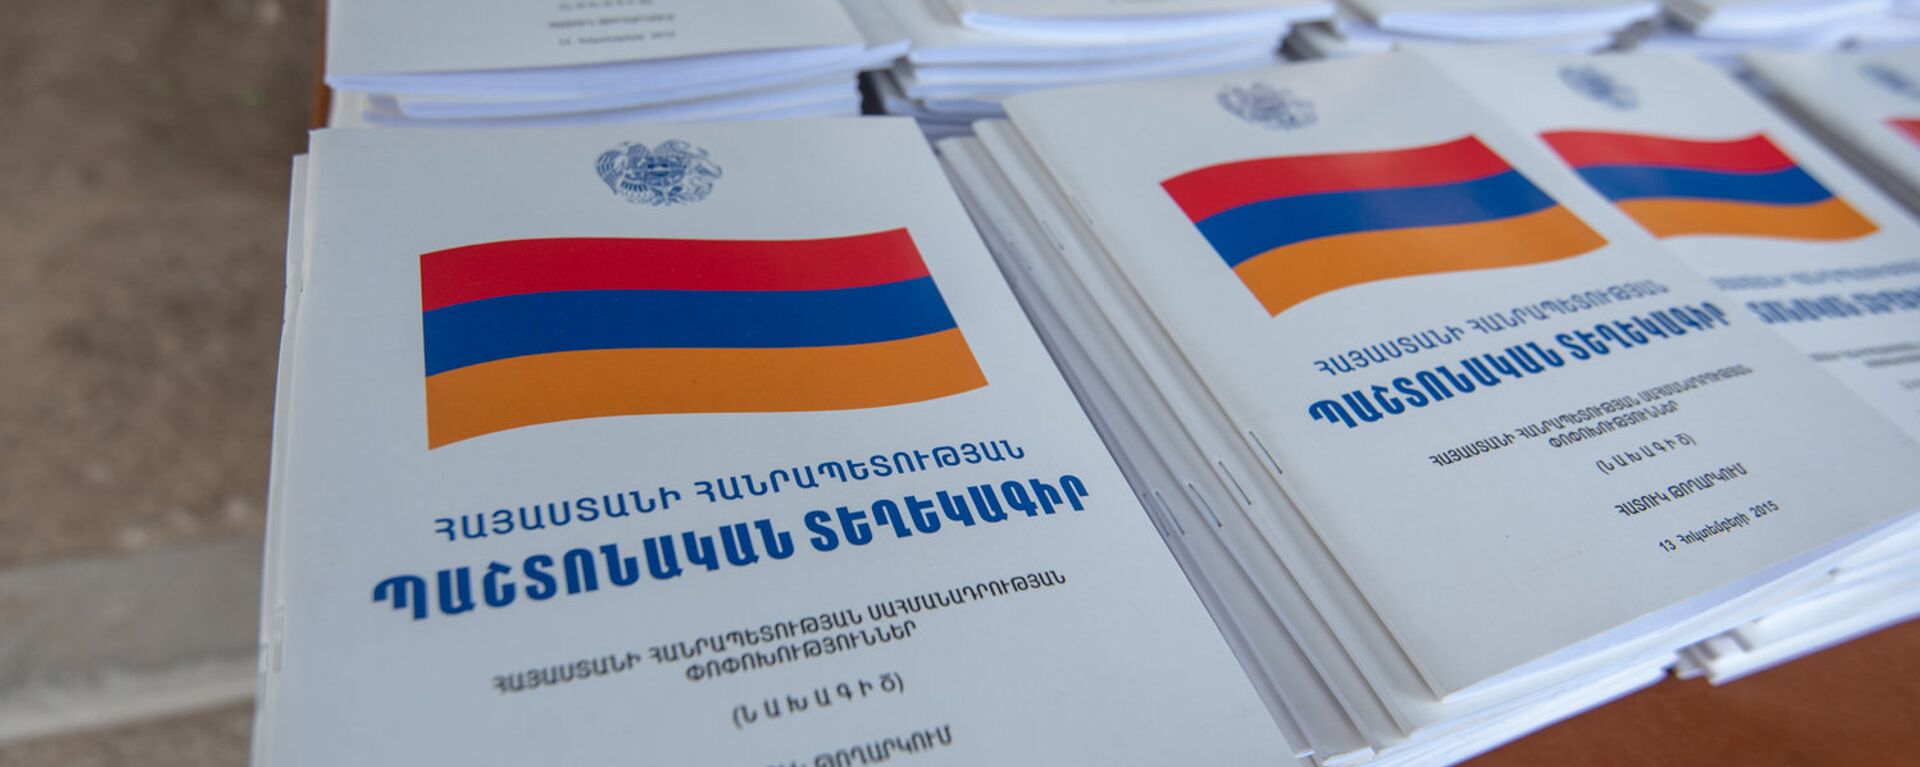 Брошюры проекта изменений Конституции Республики Армения - Sputnik Армения, 1920, 28.10.2021